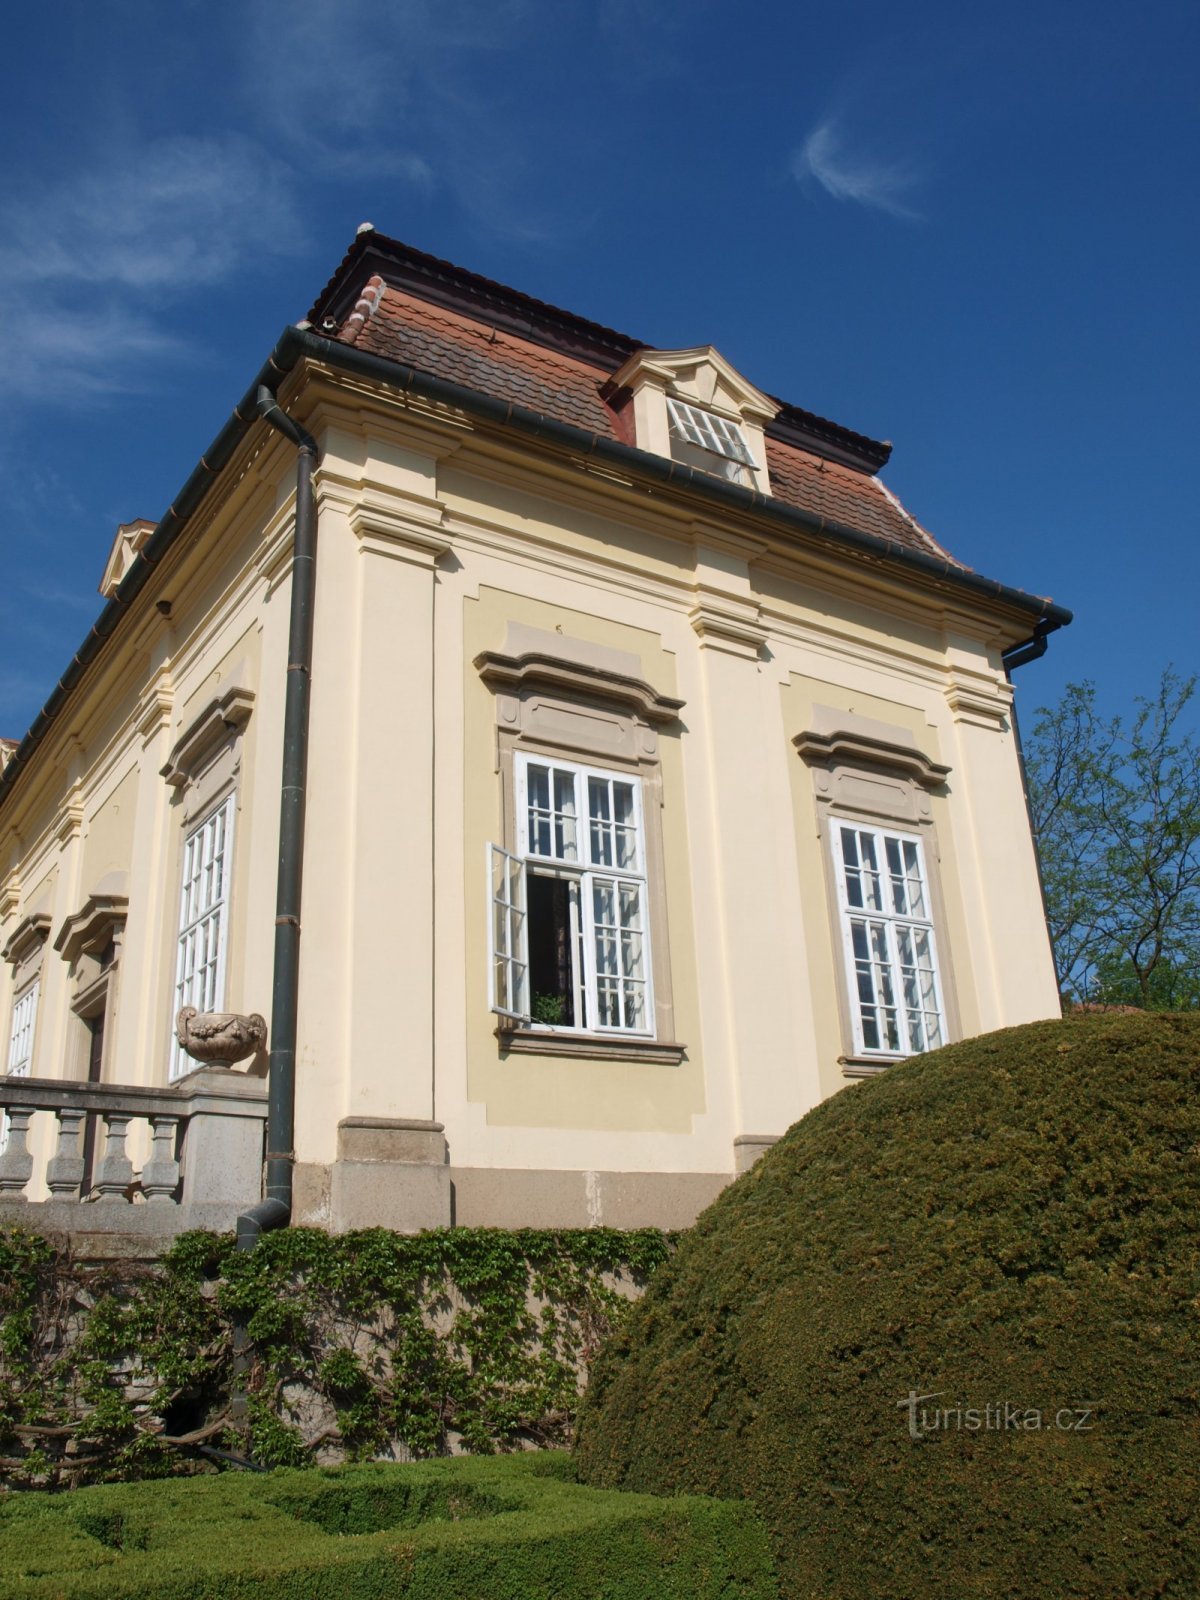 Buchlovice Chateau